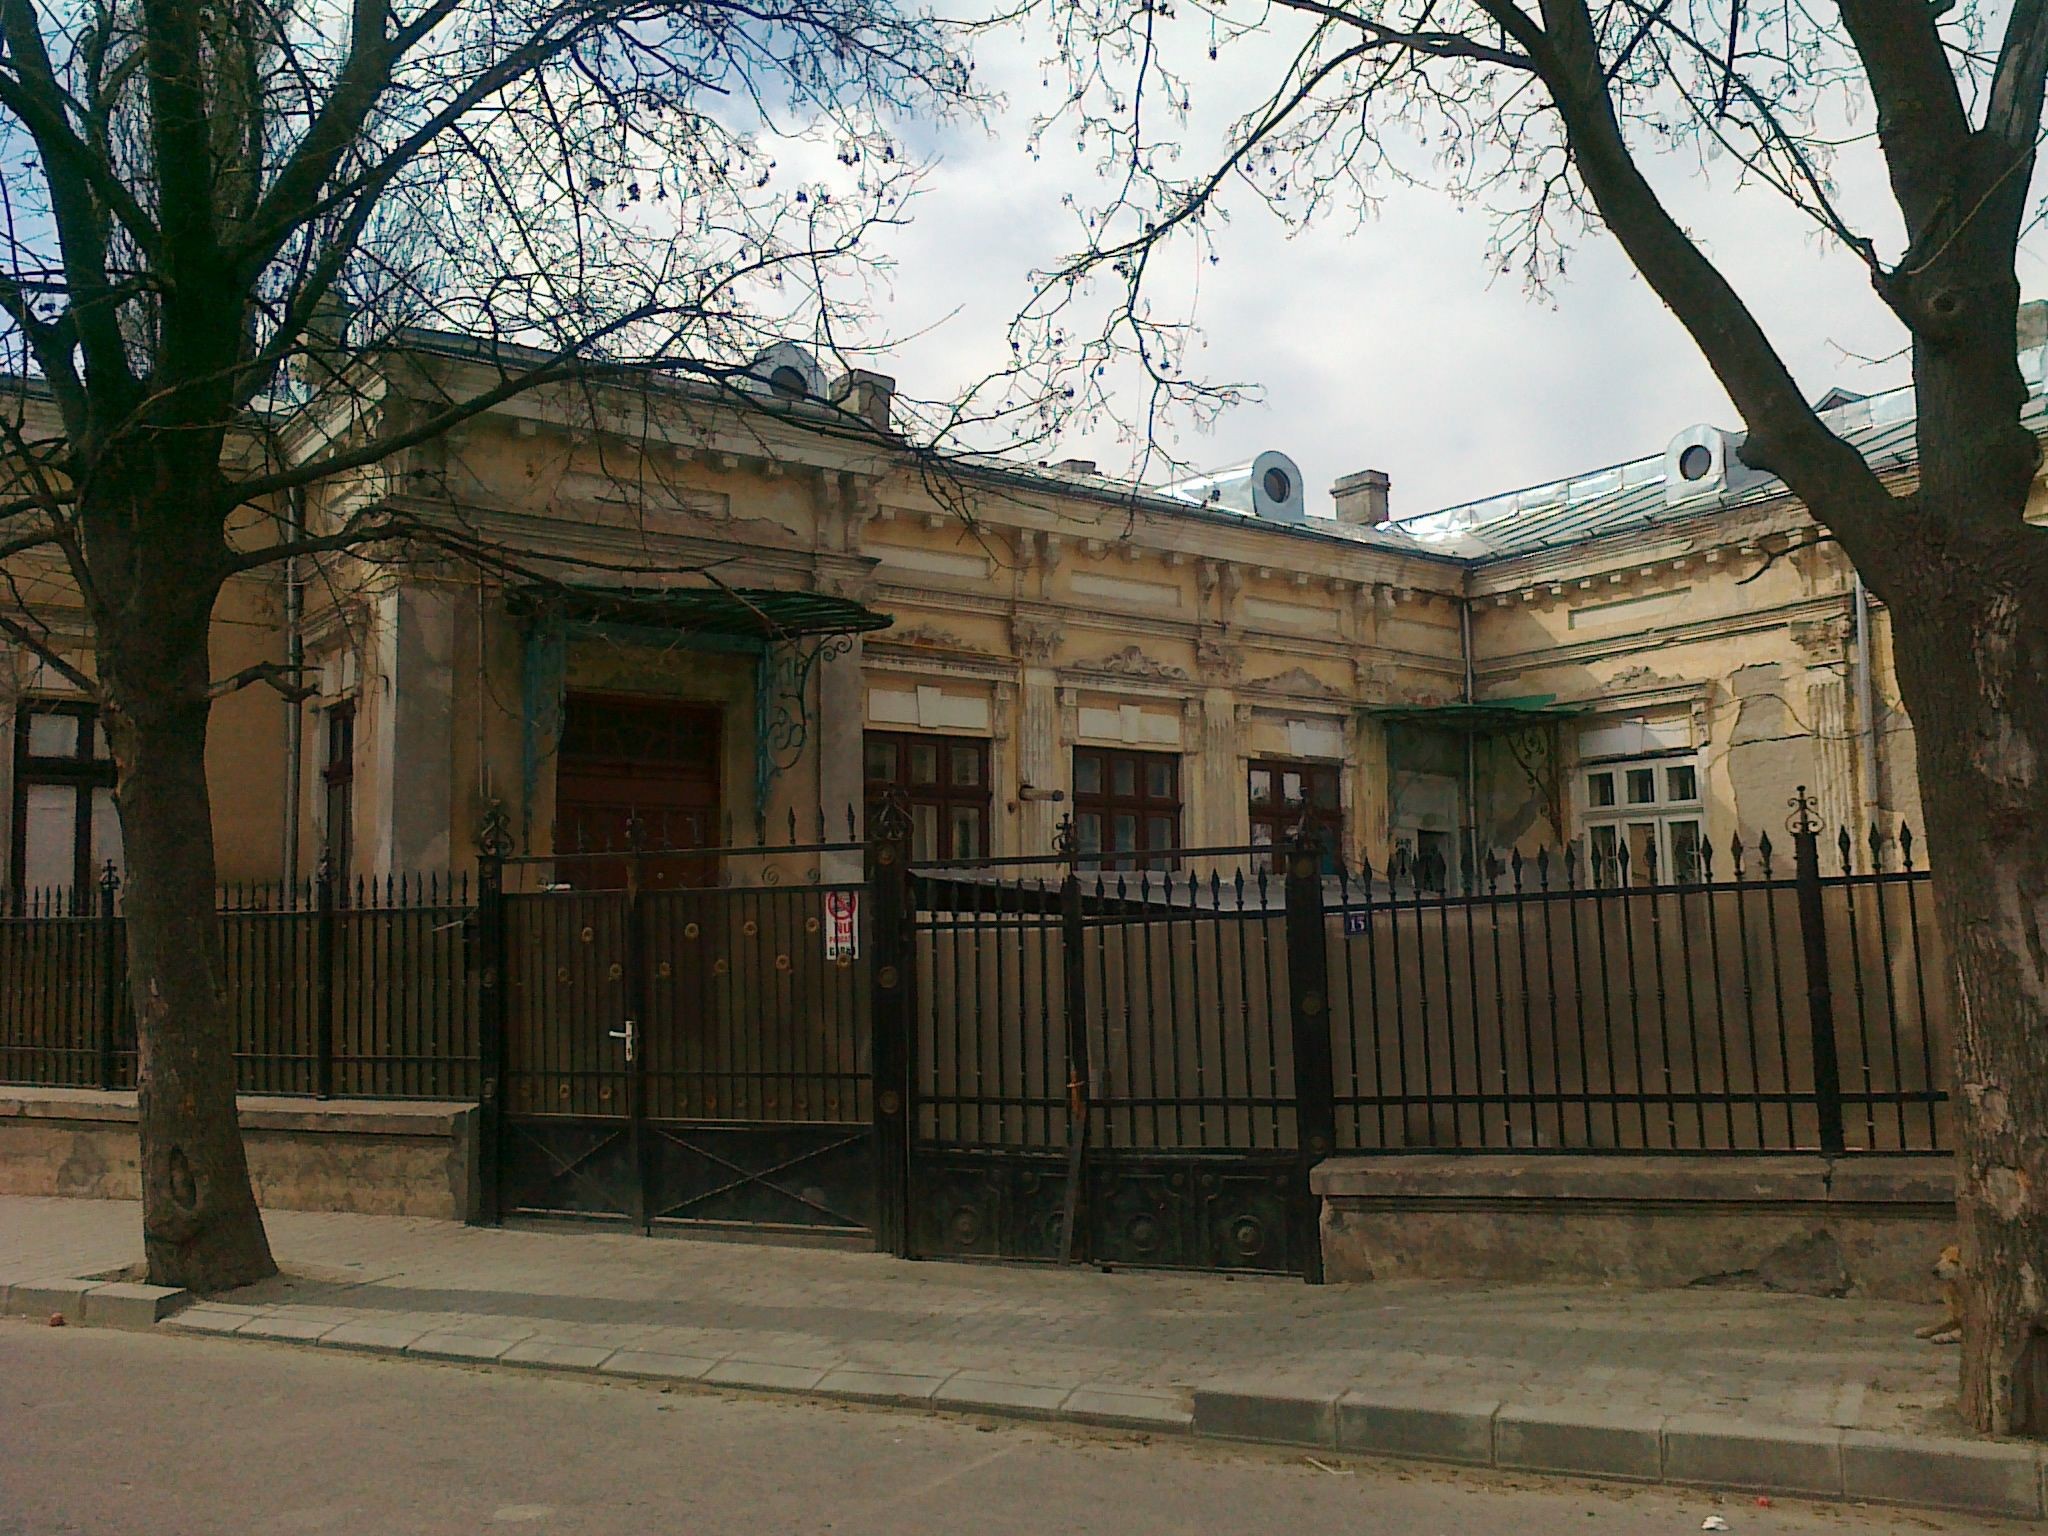 Slika 2: Stavba nekdanjega jugoslovanskega kraljevega konzulata v
                        Brăili